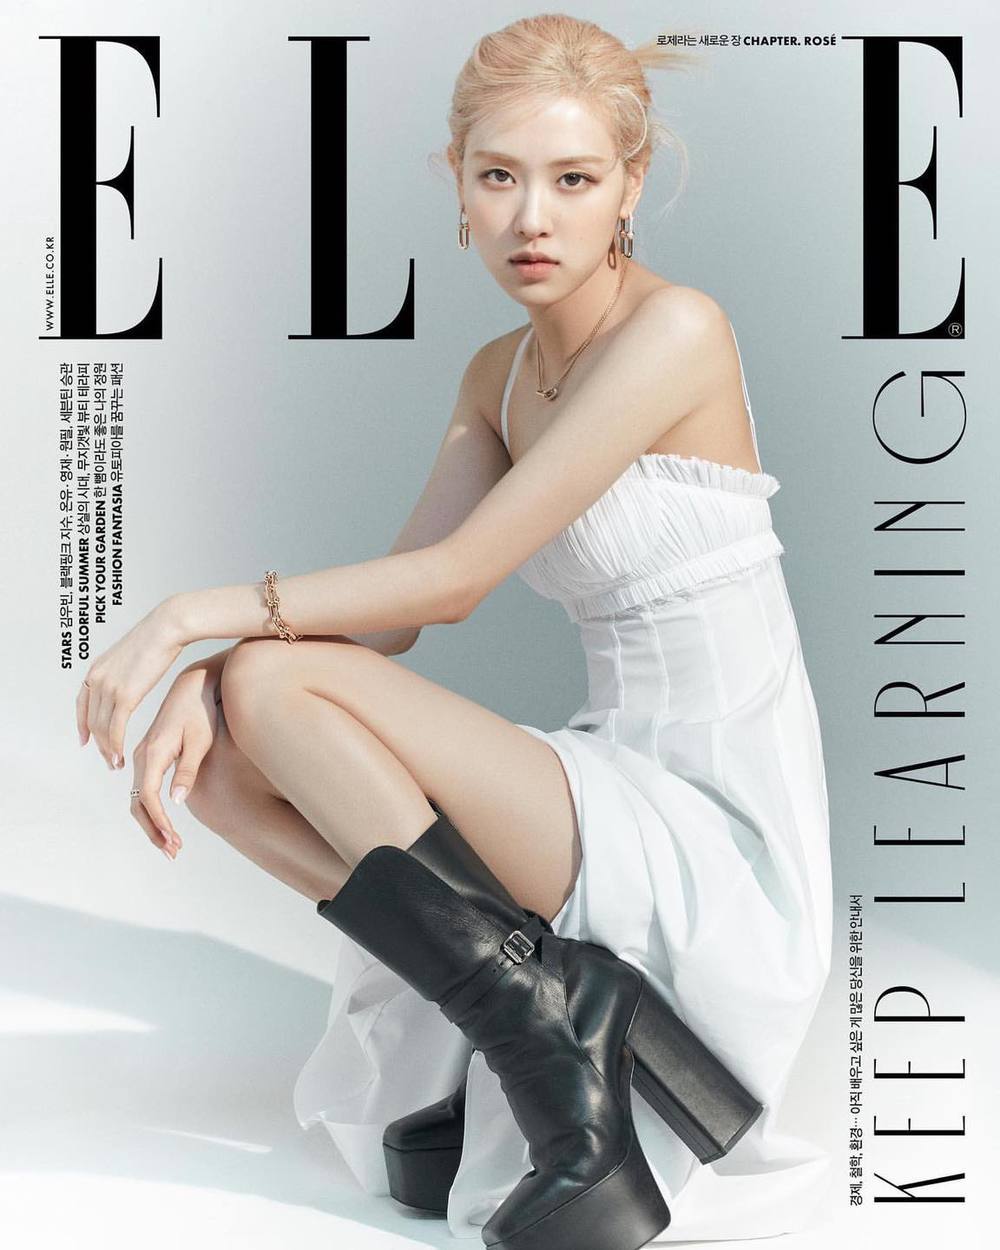 Hãy ngắm nhìn ảnh bìa tạp chí Elle Hàn Quốc mãn nhãn với sự tinh tế và sáng tạo vô cùng ấn tượng. Bạn sẽ không thể rời mắt khỏi bức ảnh đầy cảm hứng và sự độc đáo của chuyên gia tạo hình chuyên nghiệp.